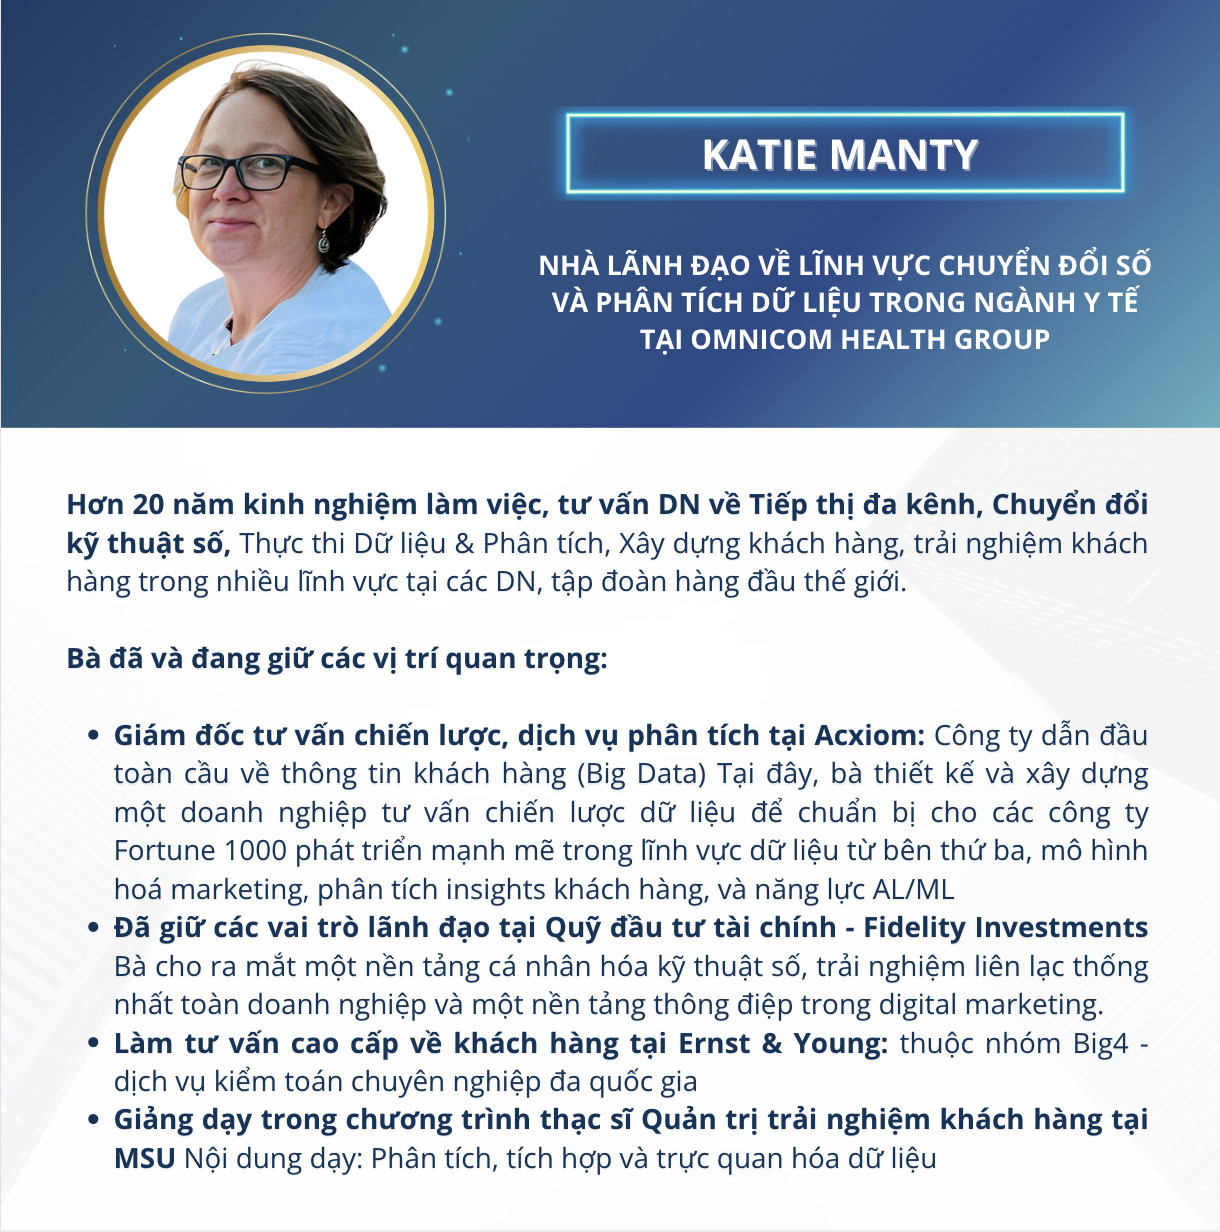 Katie Manty – Nhà lãnh đạo về lĩnh vực chuyển đổi số và phân tích dữ liệu trong ngành y tế tại Omnicom Health Group (Giảng viên khóa học CXM - Quản trị trải nghiệm khách hàng MSU & FPT)